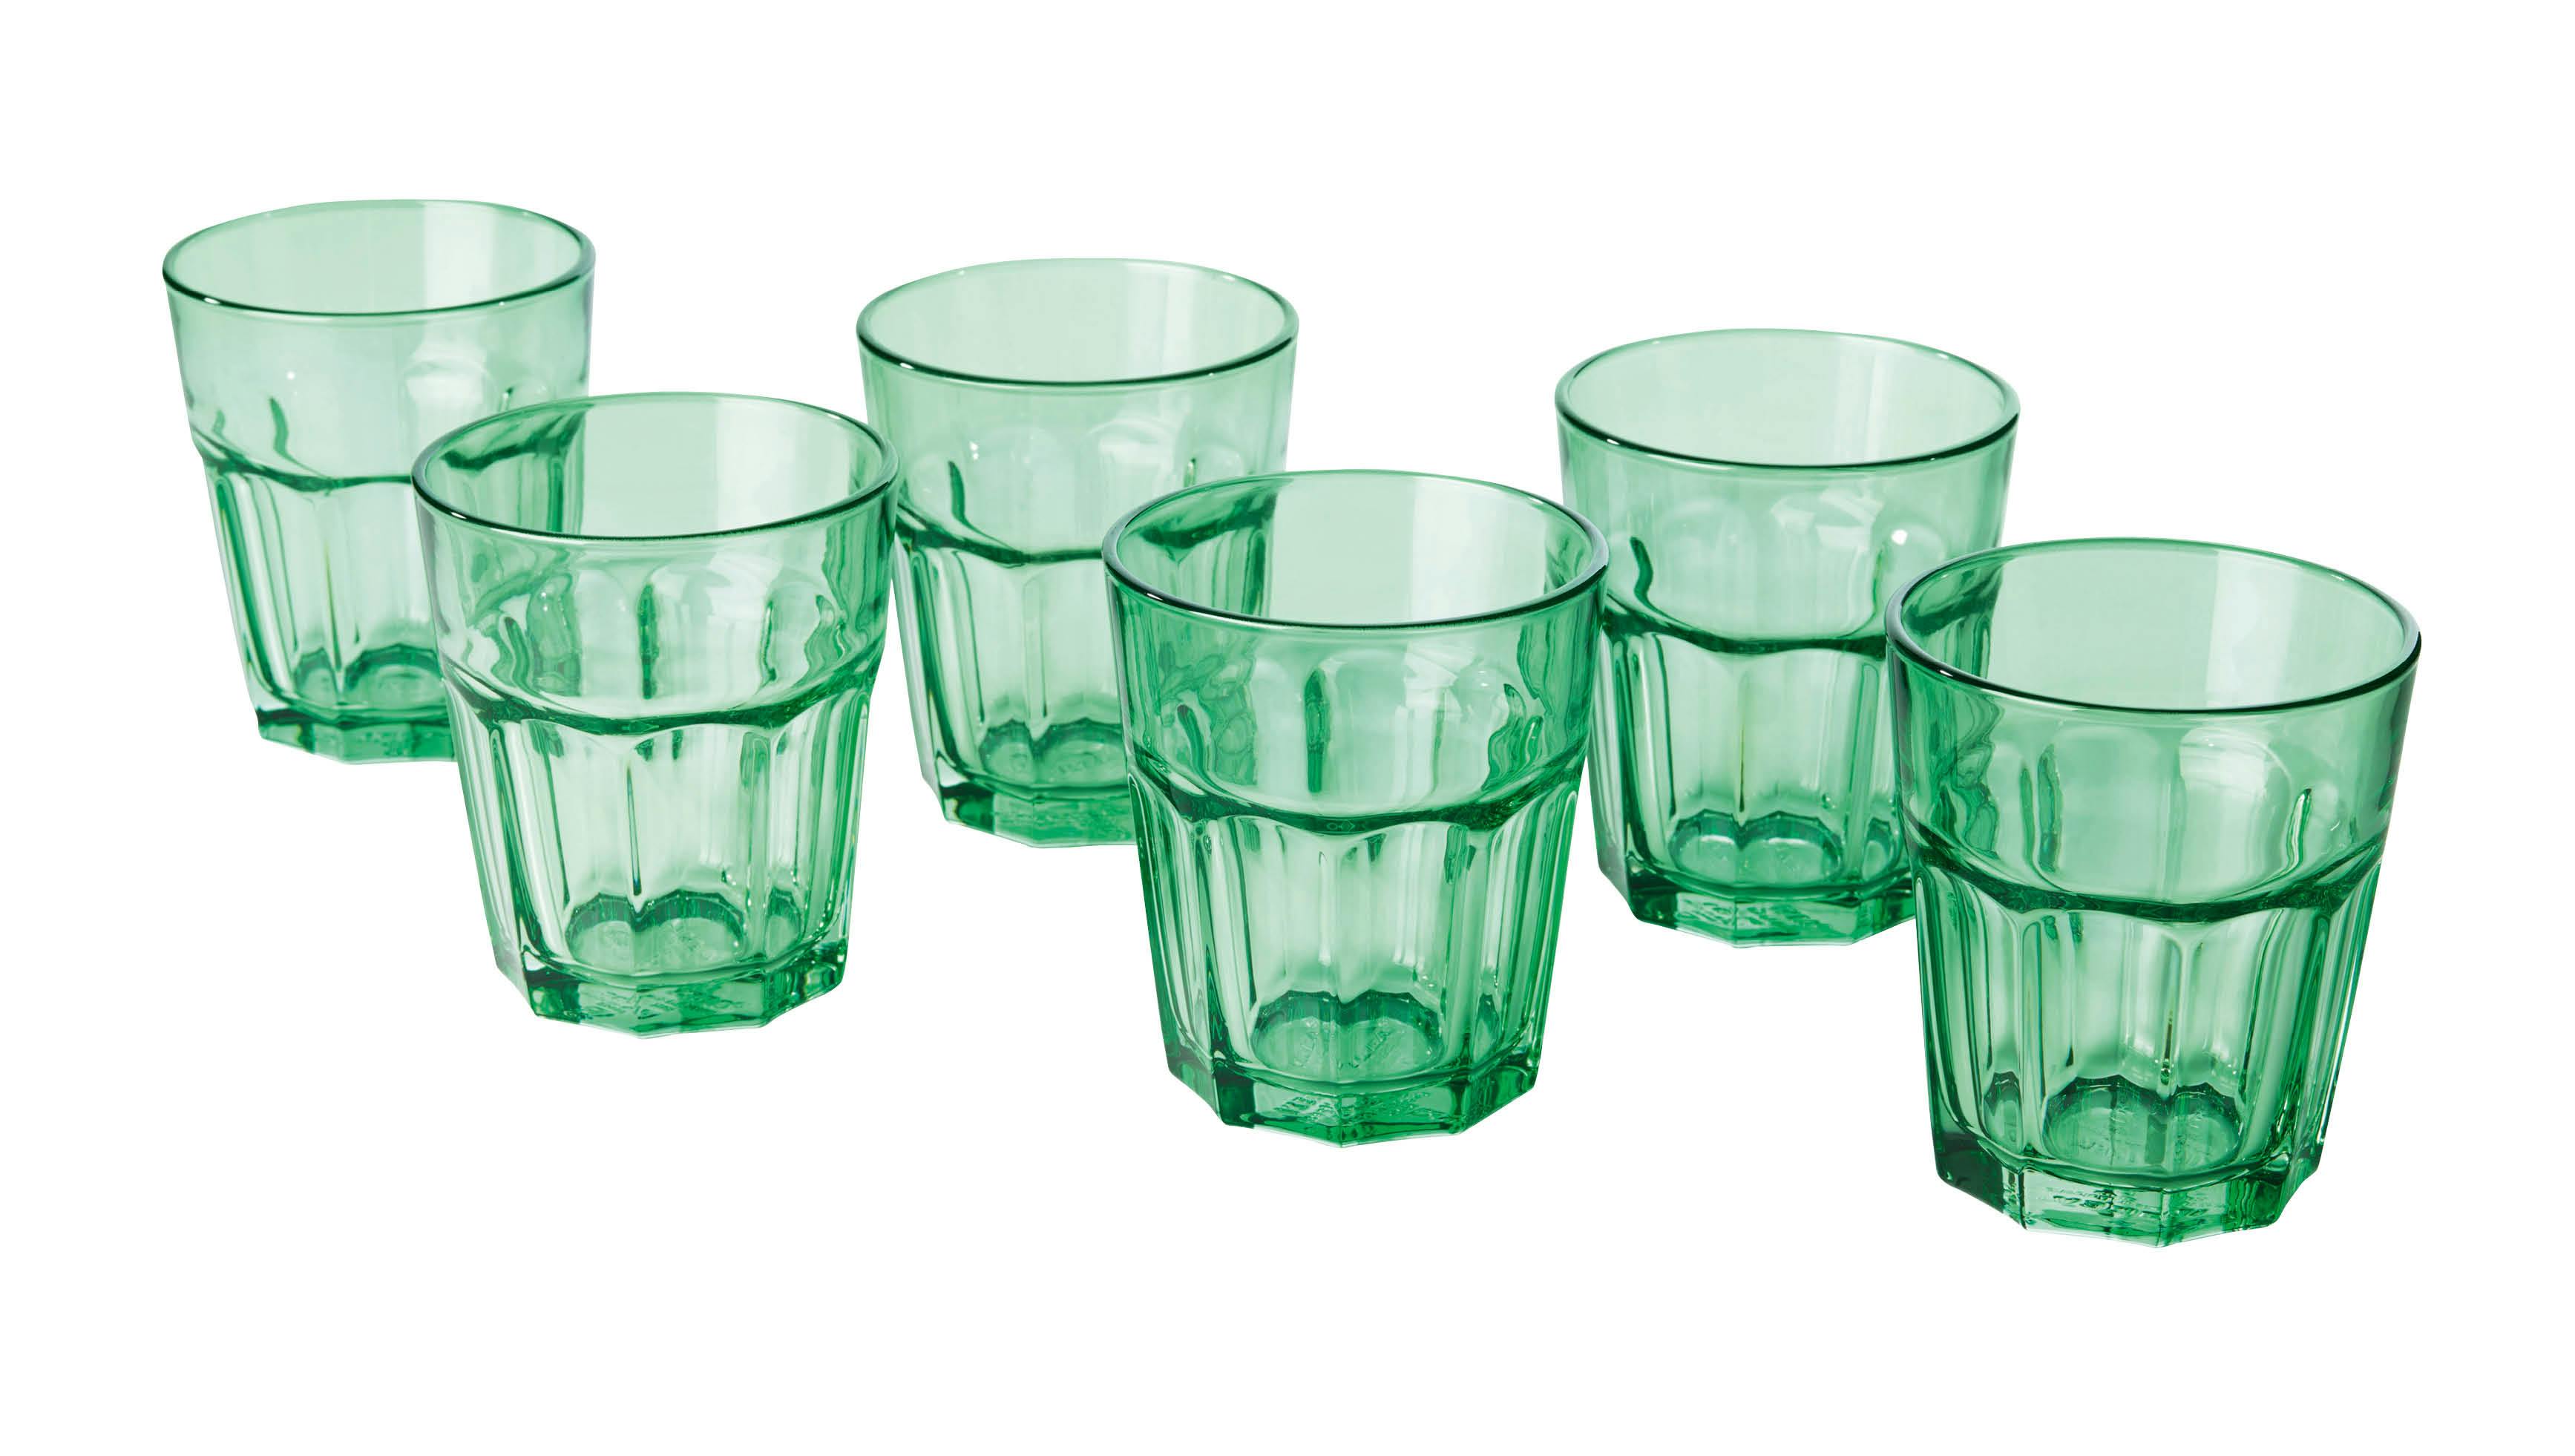 Grønne glas fra IKEA til borddækning